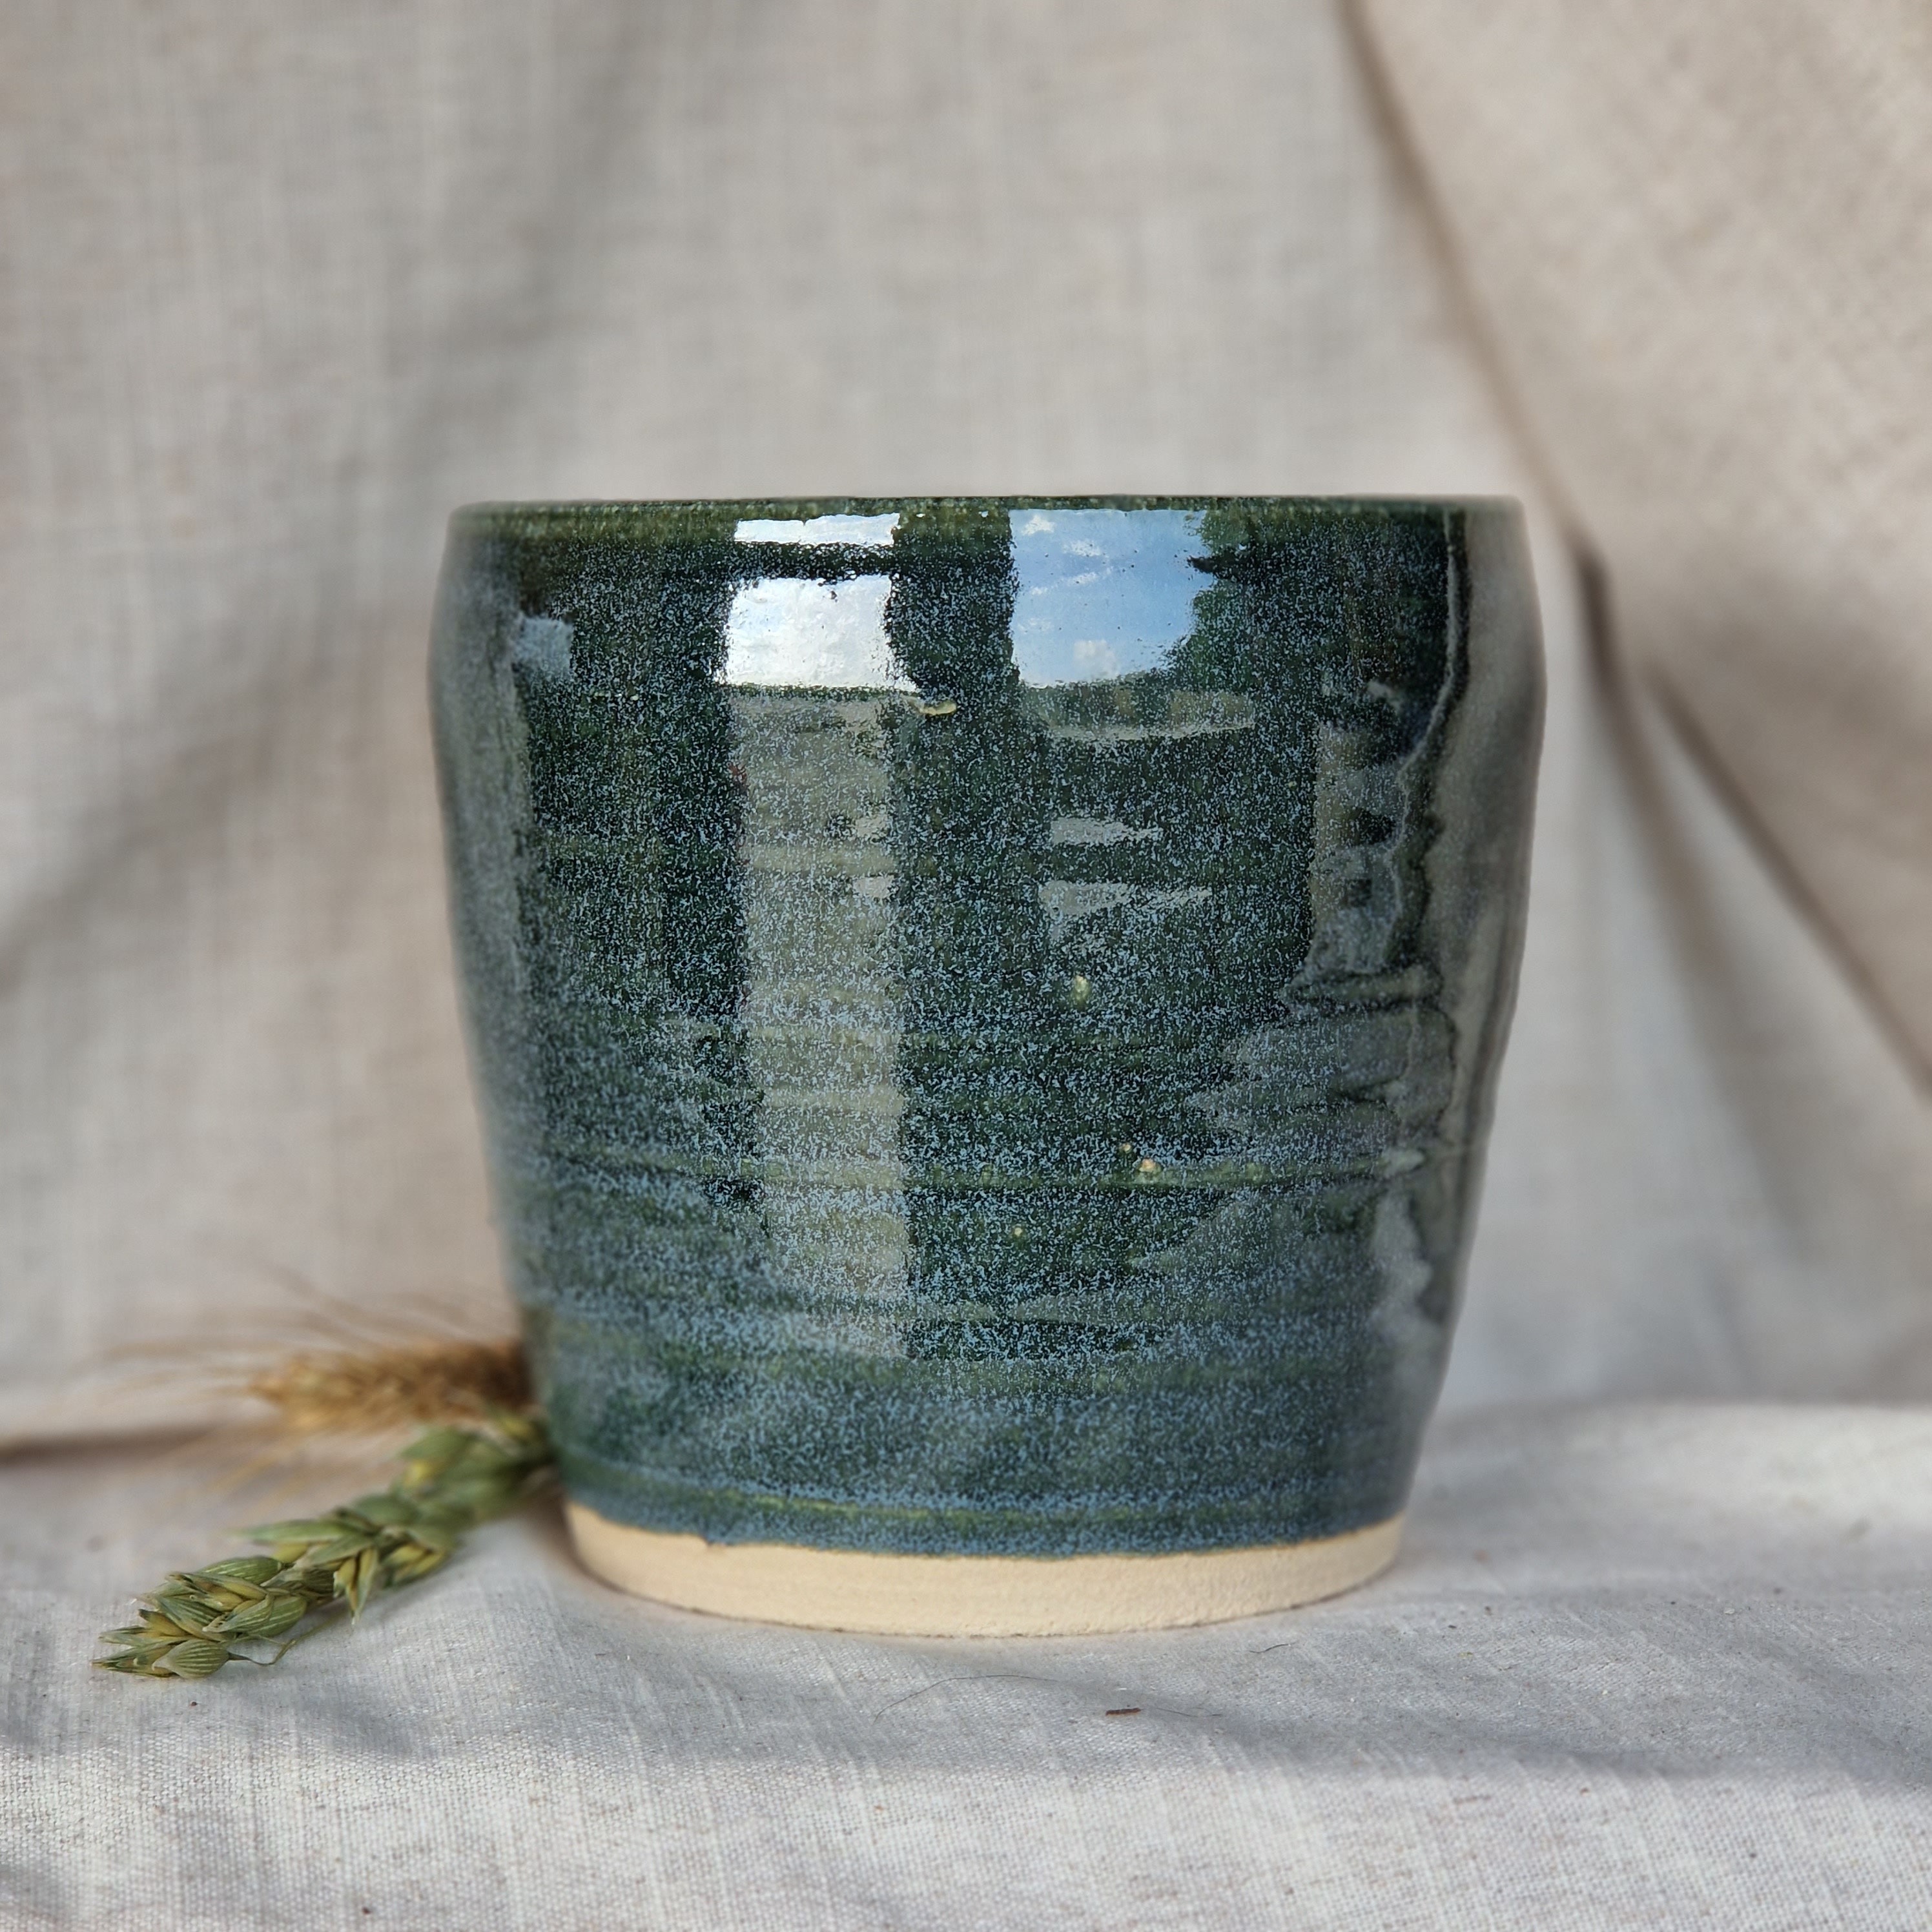 Handgefertigter blättriger Keramik-Blumentopf in Grün- und Rosatönen –  Grüne Wurzeln